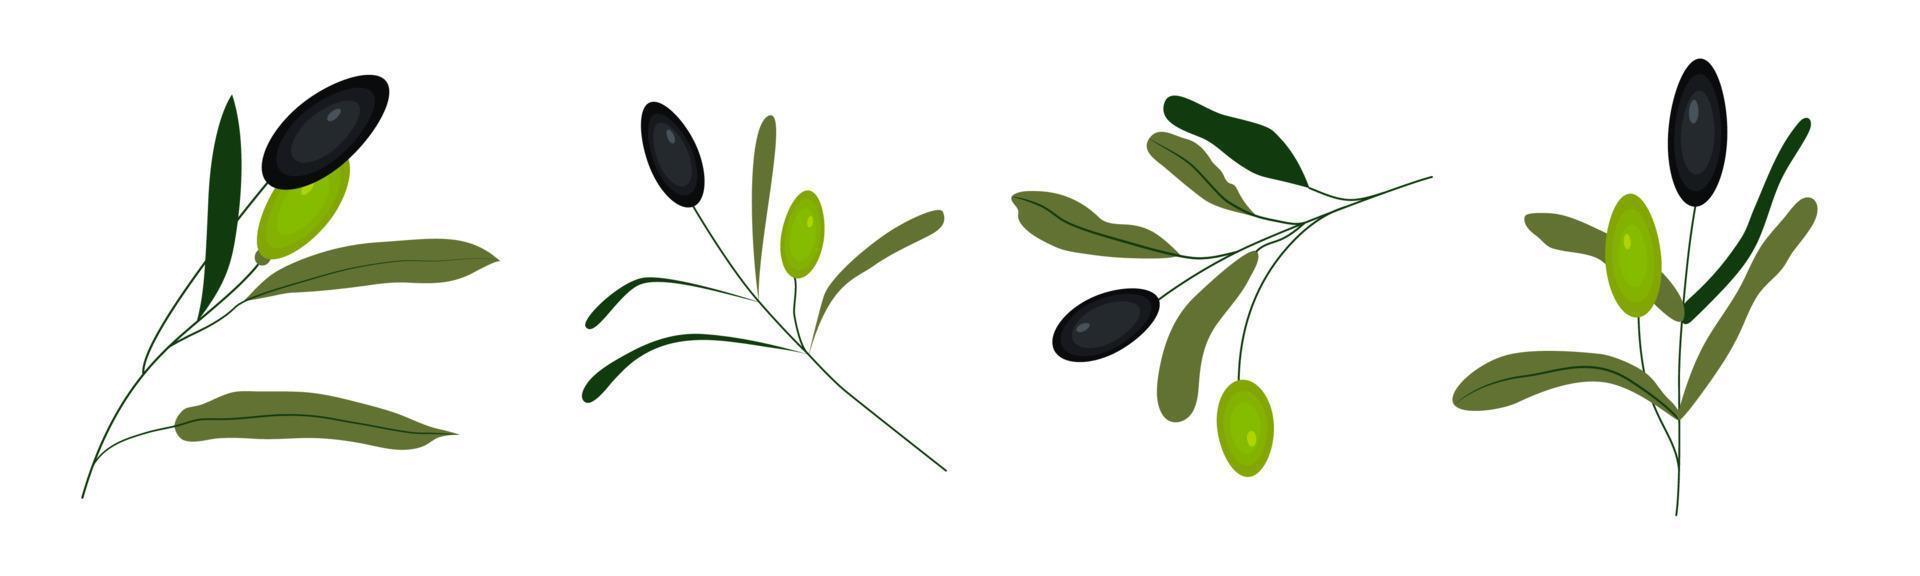 uppsättning av gröna och svarta vektor olivkvistar isolerad på vit bakgrund. oliver är oljetecken, hälsosamma produkter, ekologisk kosmetika, ekomat, naturligt element.